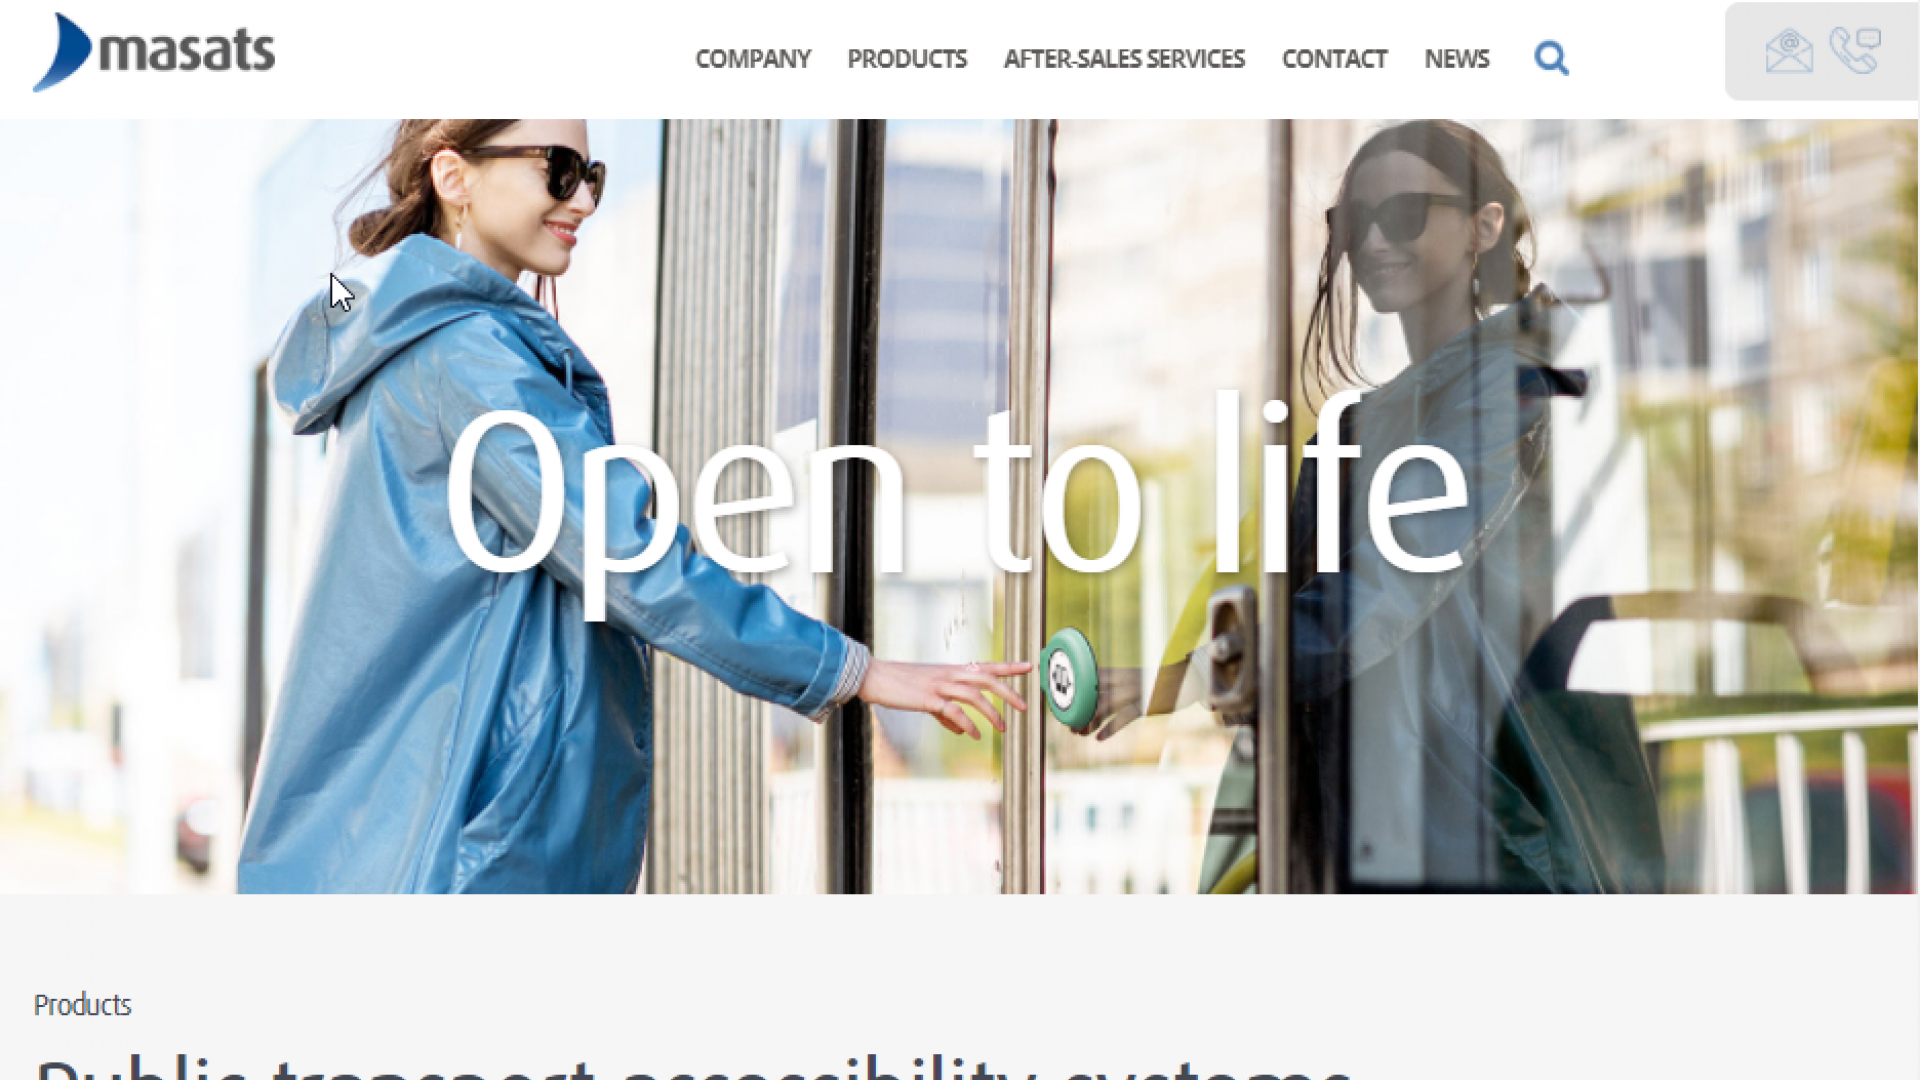 Masats renouvelle son site web avec de nouveaux services à la clientèle  